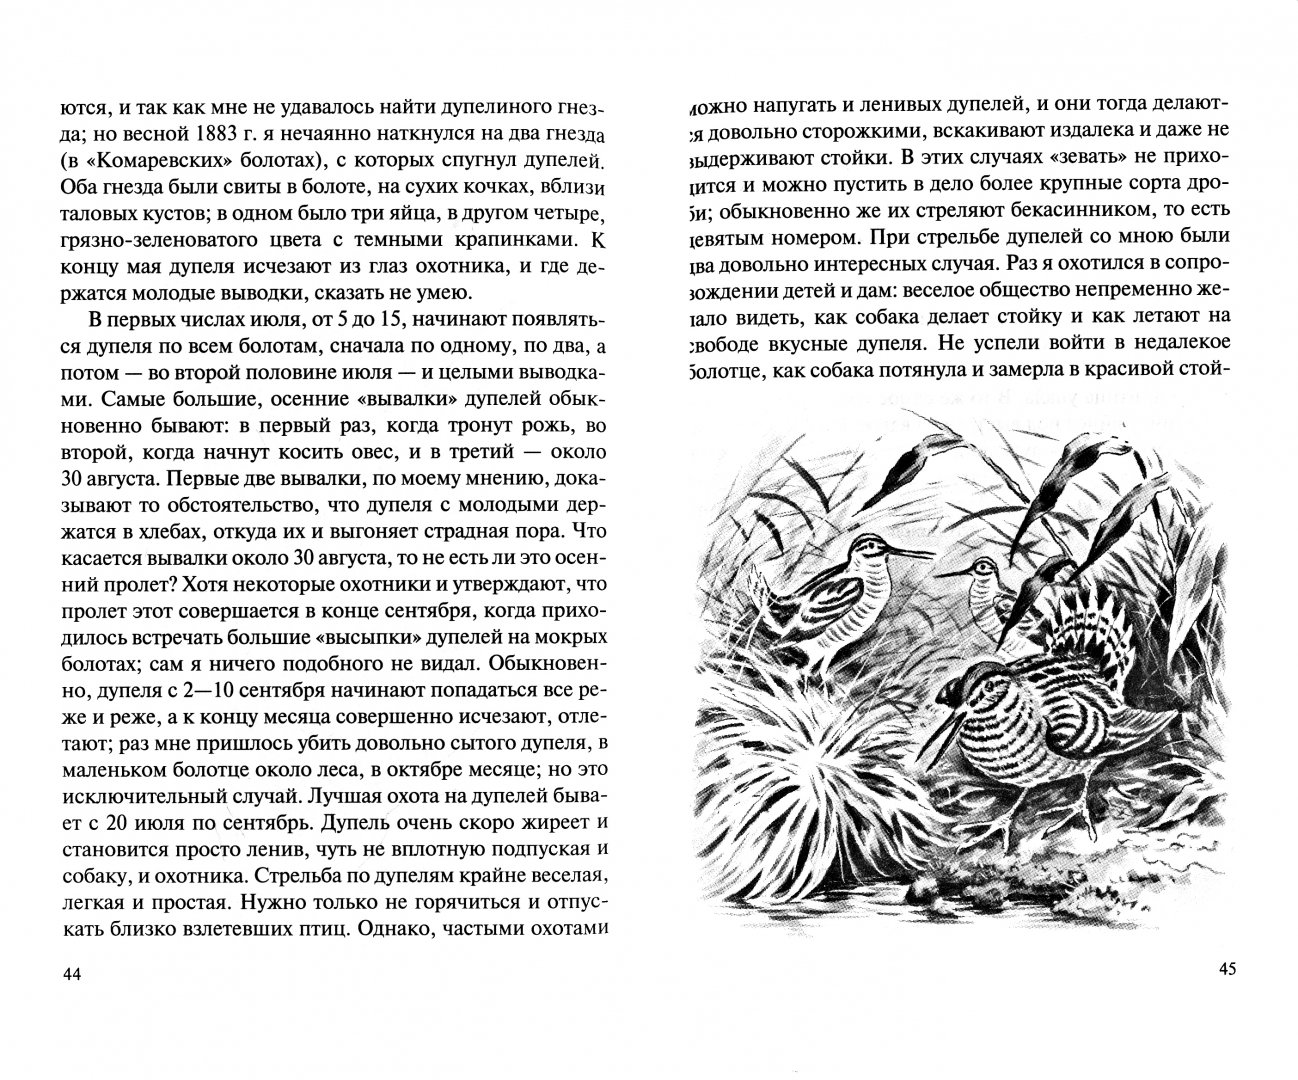 Иллюстрация 1 из 5 для Охота в болоте - Анатолий Савельев | Лабиринт - книги. Источник: Лабиринт